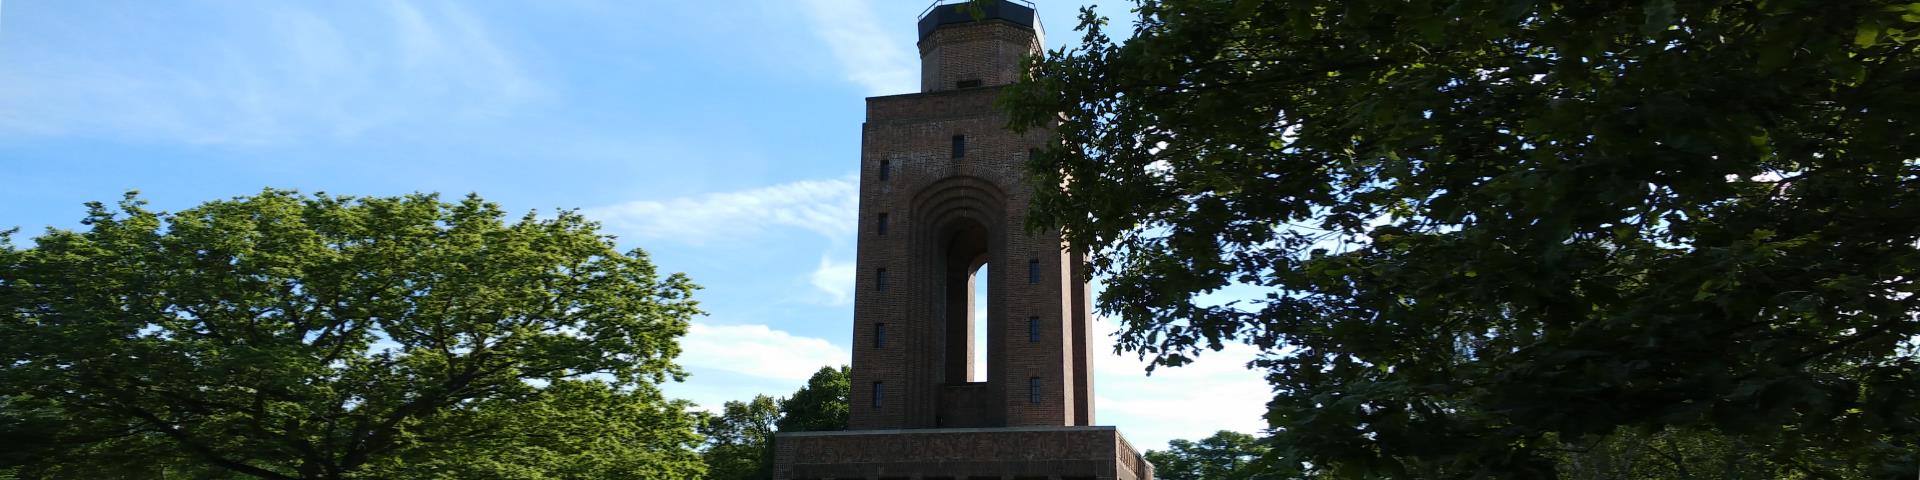 Der Bismarckturm in Burg Spreewald